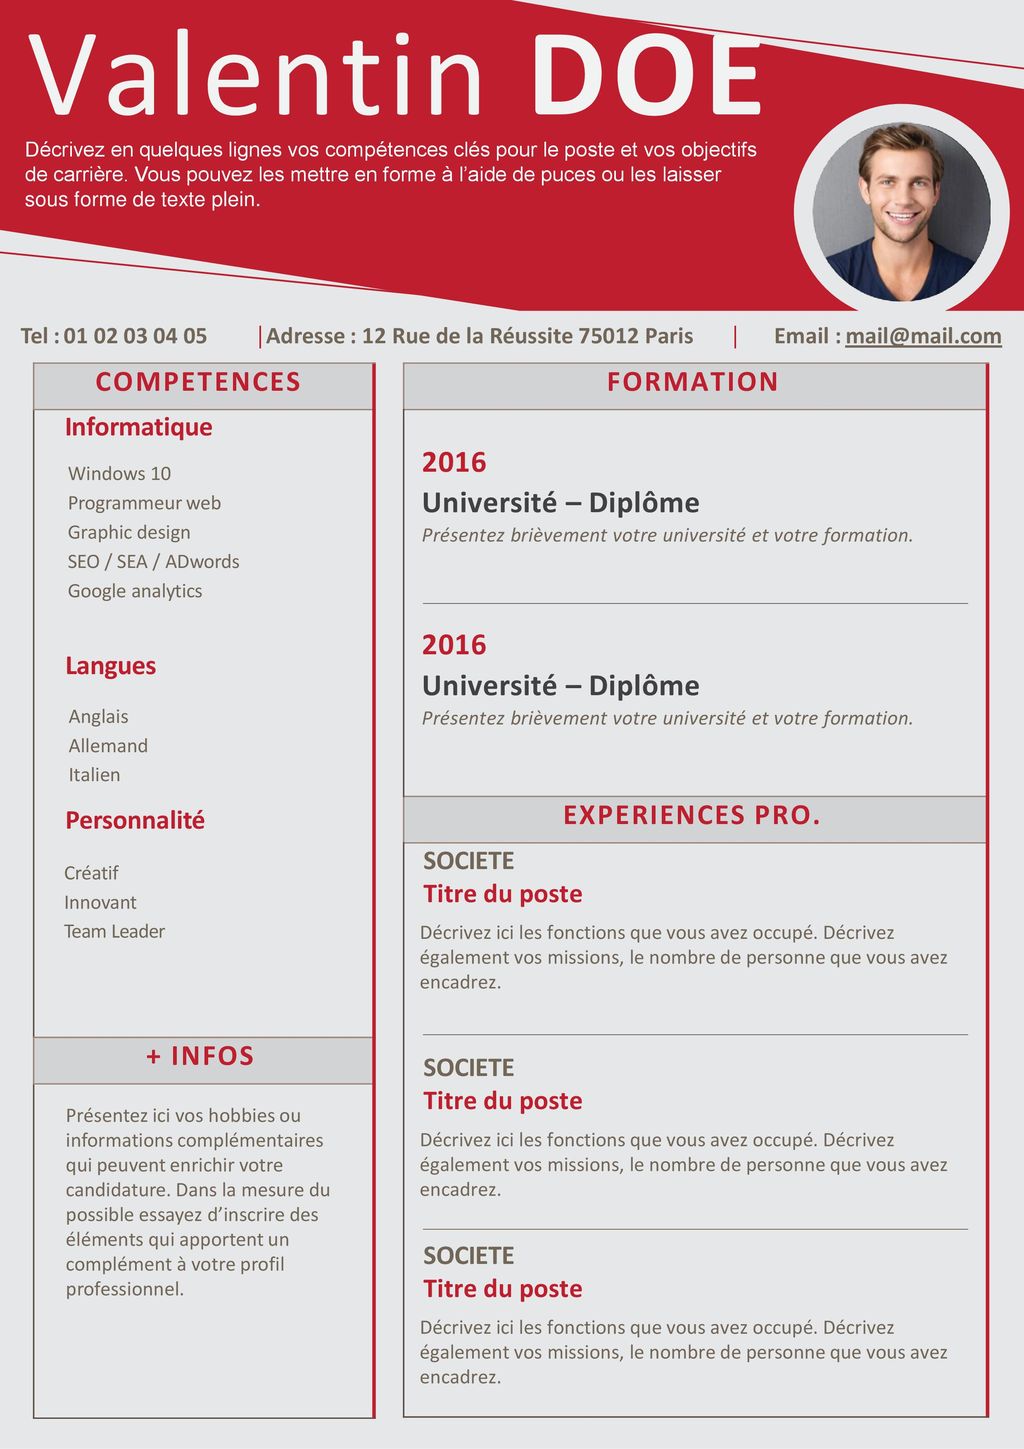 Valentin DOE 2016 Université – Diplôme COMPETENCES + INFOS FORMATION